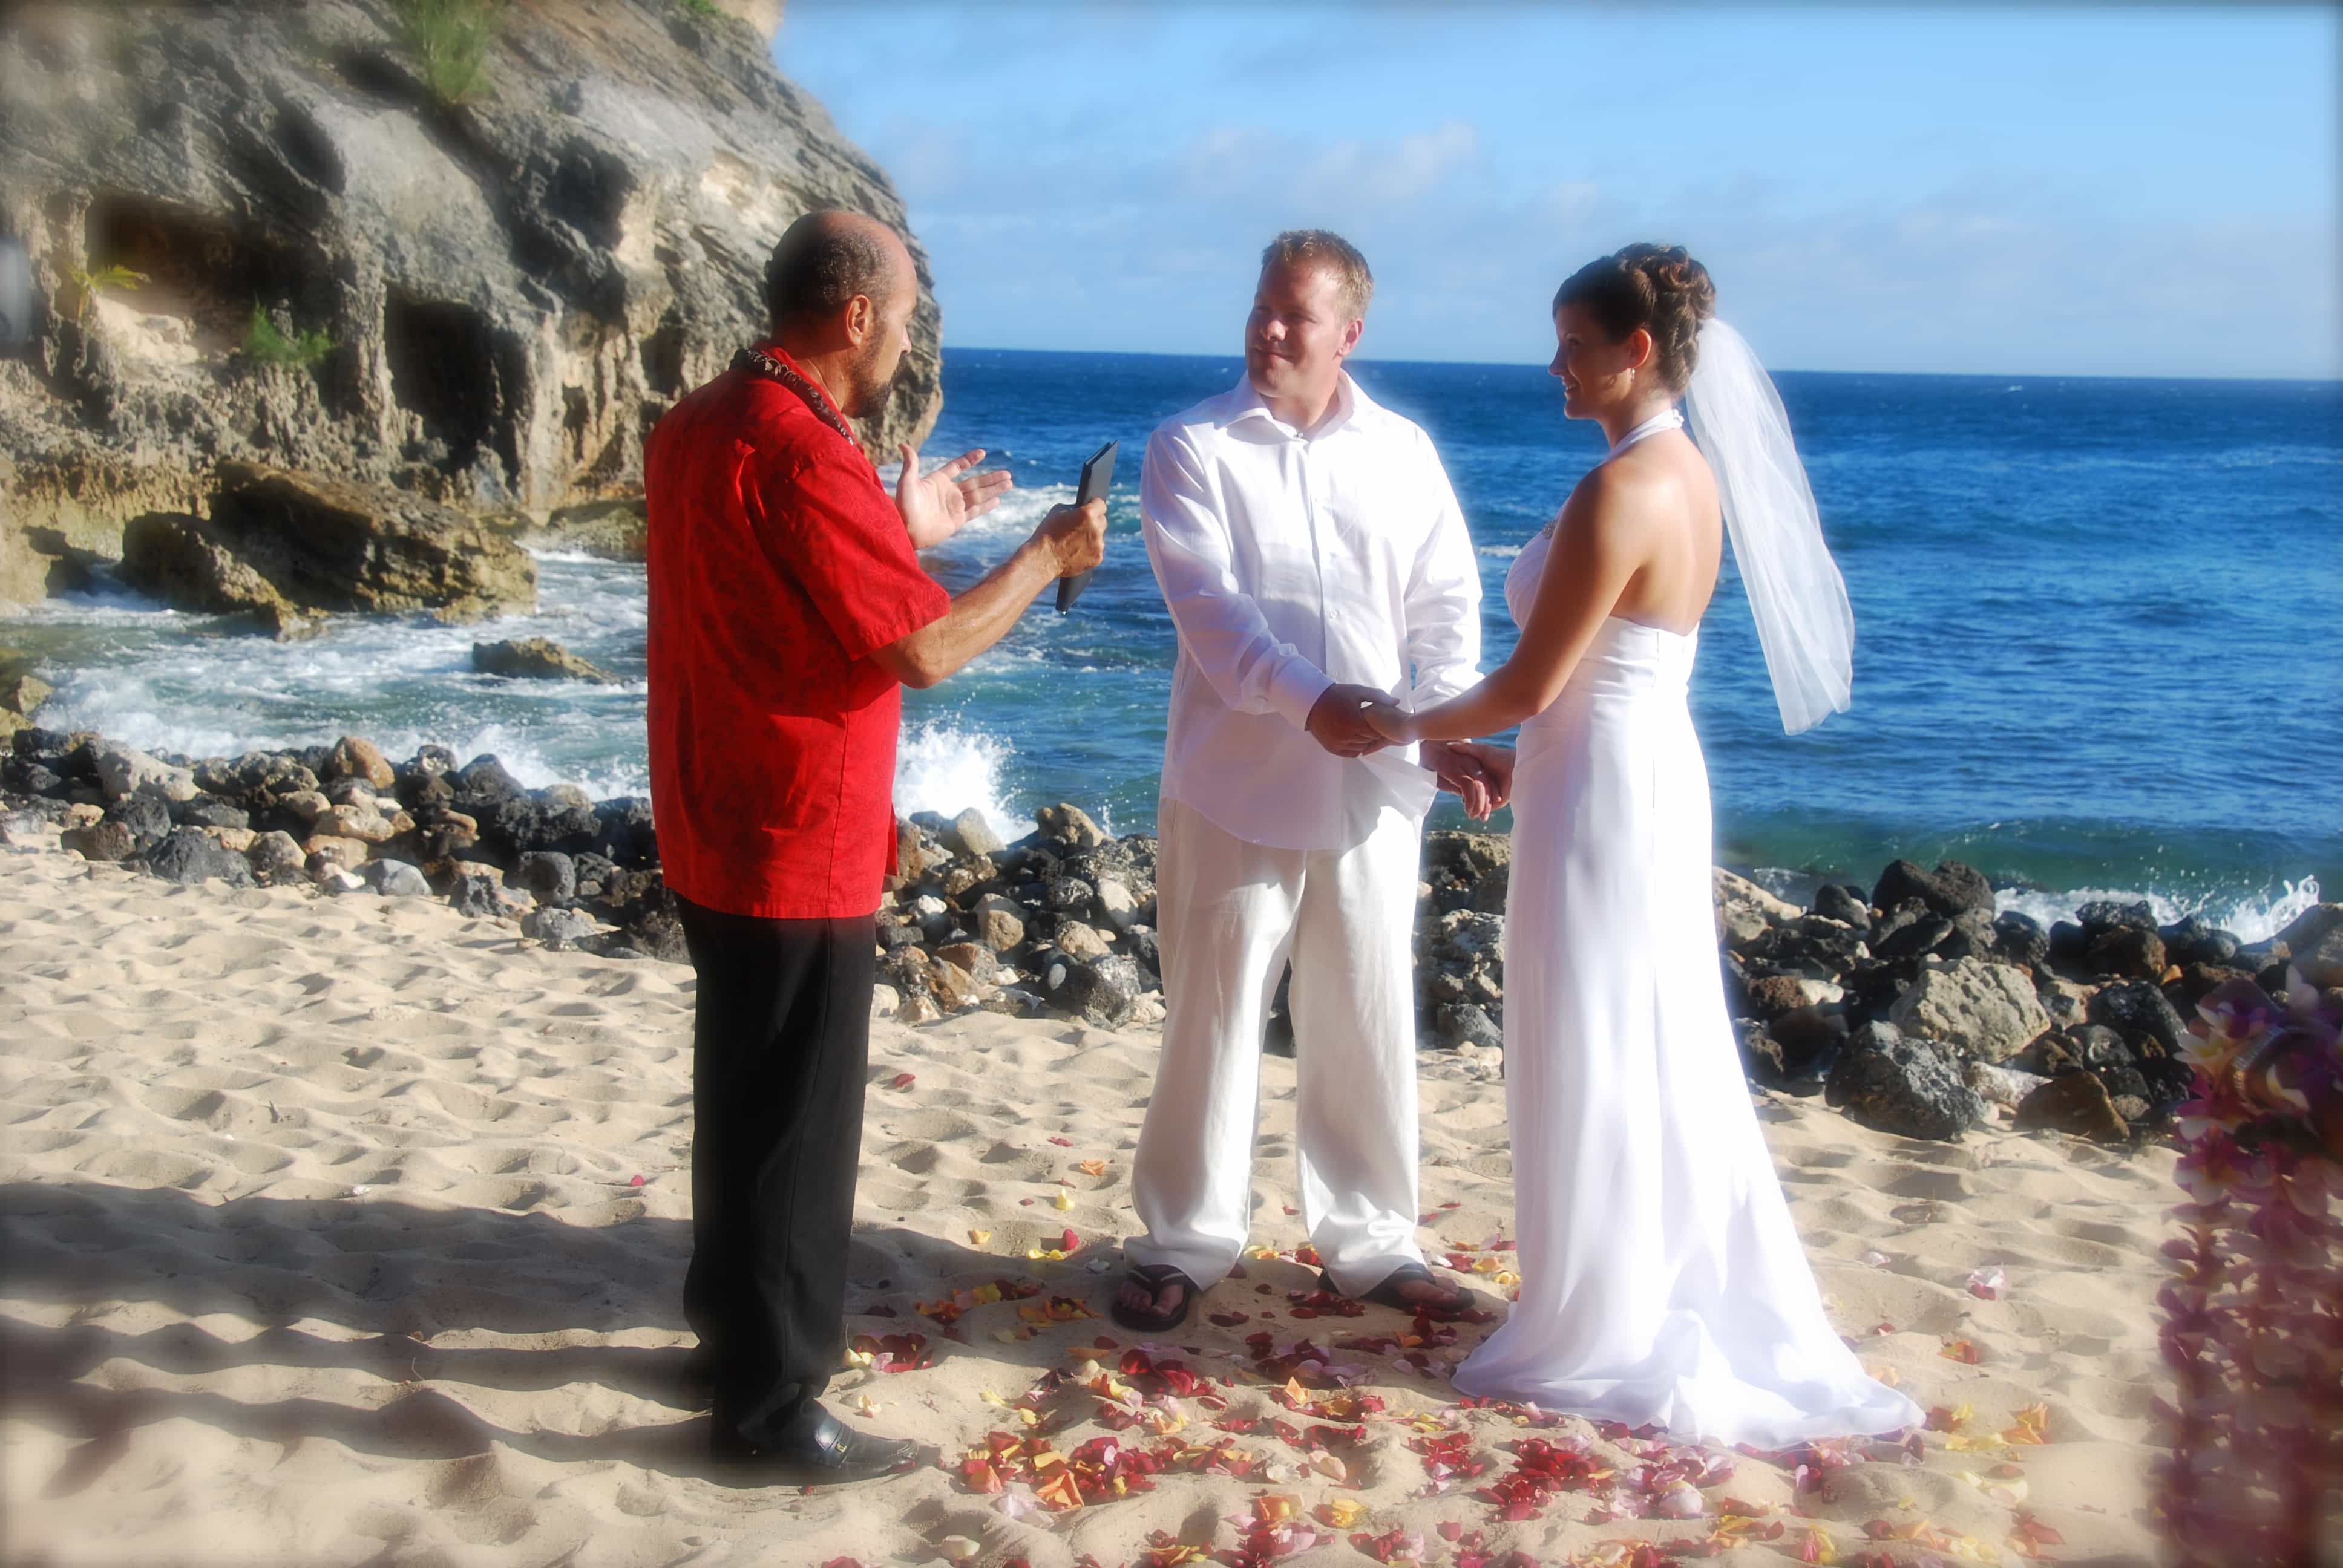 Kauai marriage license